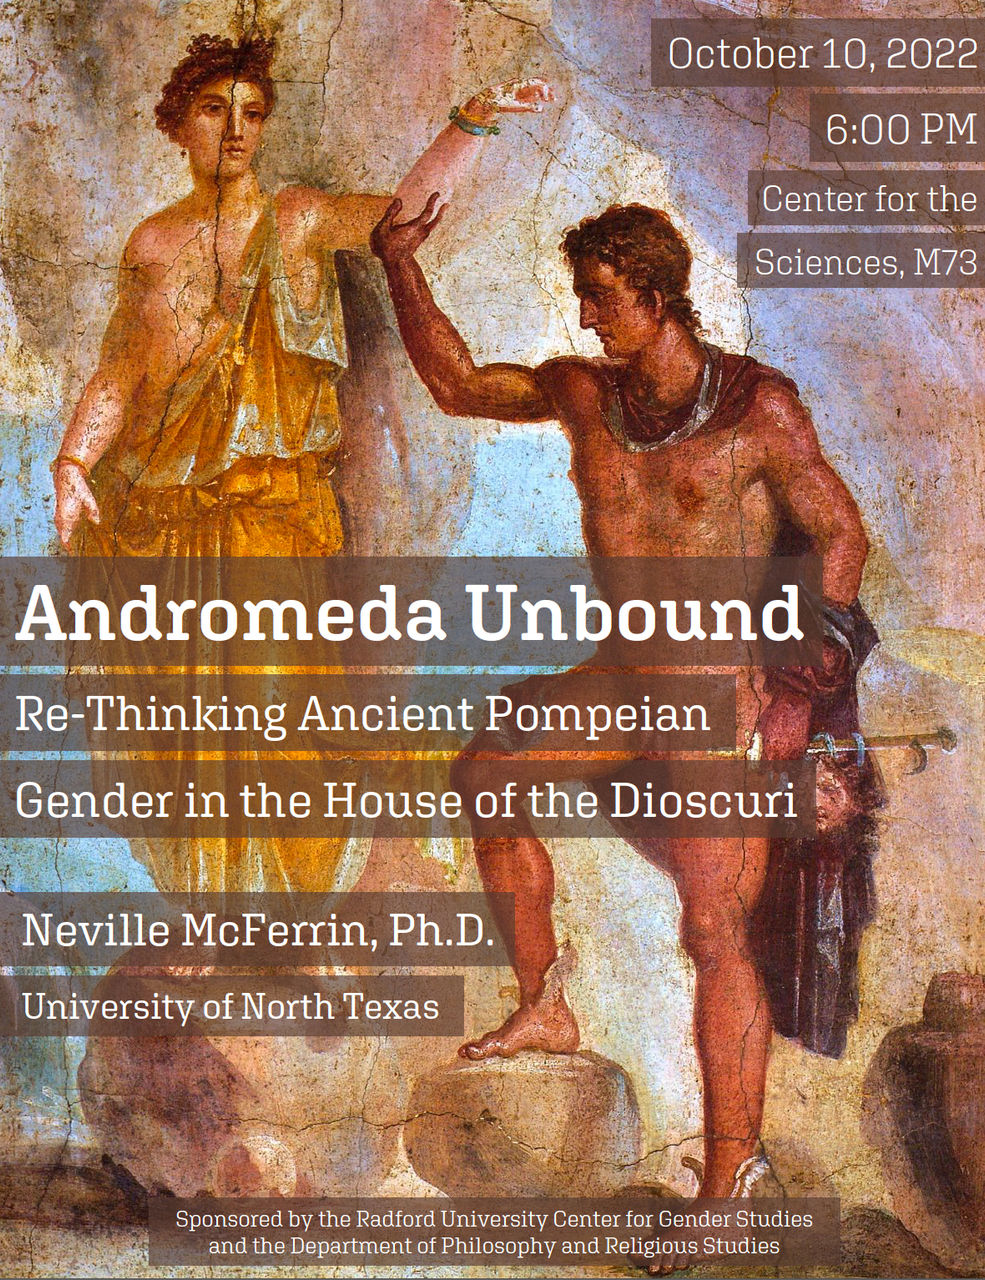 N. McFerrin, "Andromeda Unbound" (October 10, 2022)